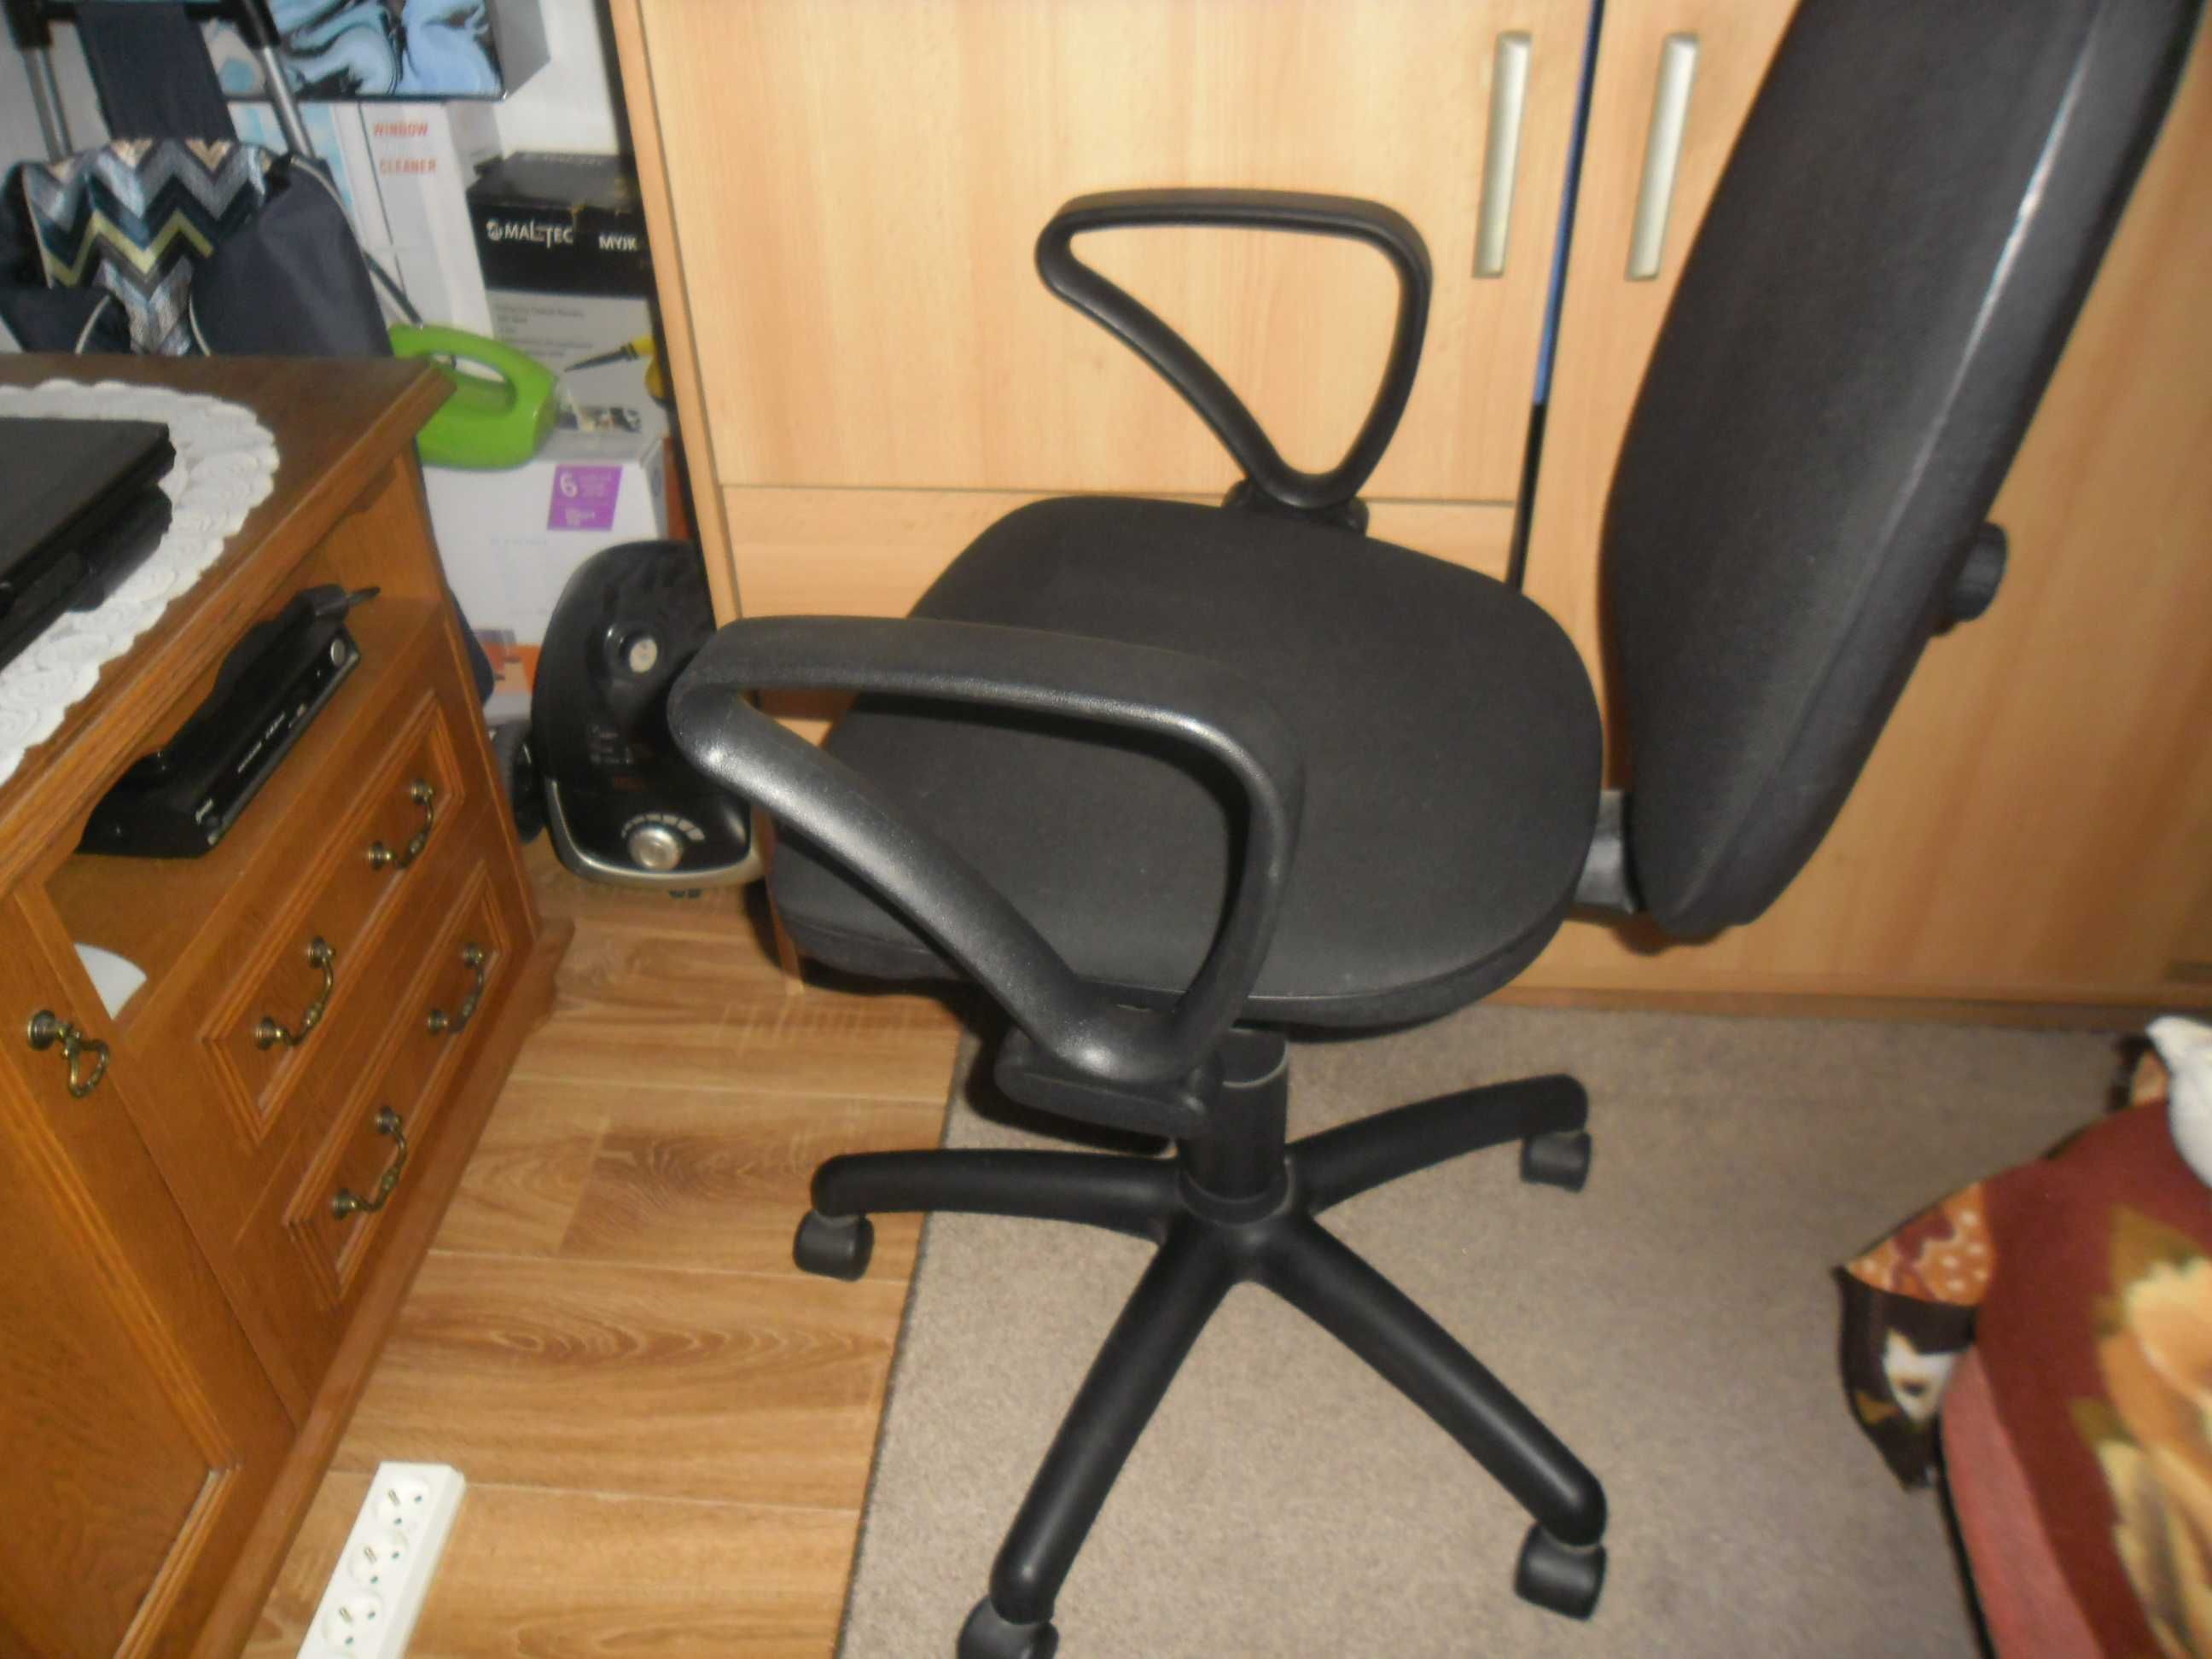 Krzesło do komputera